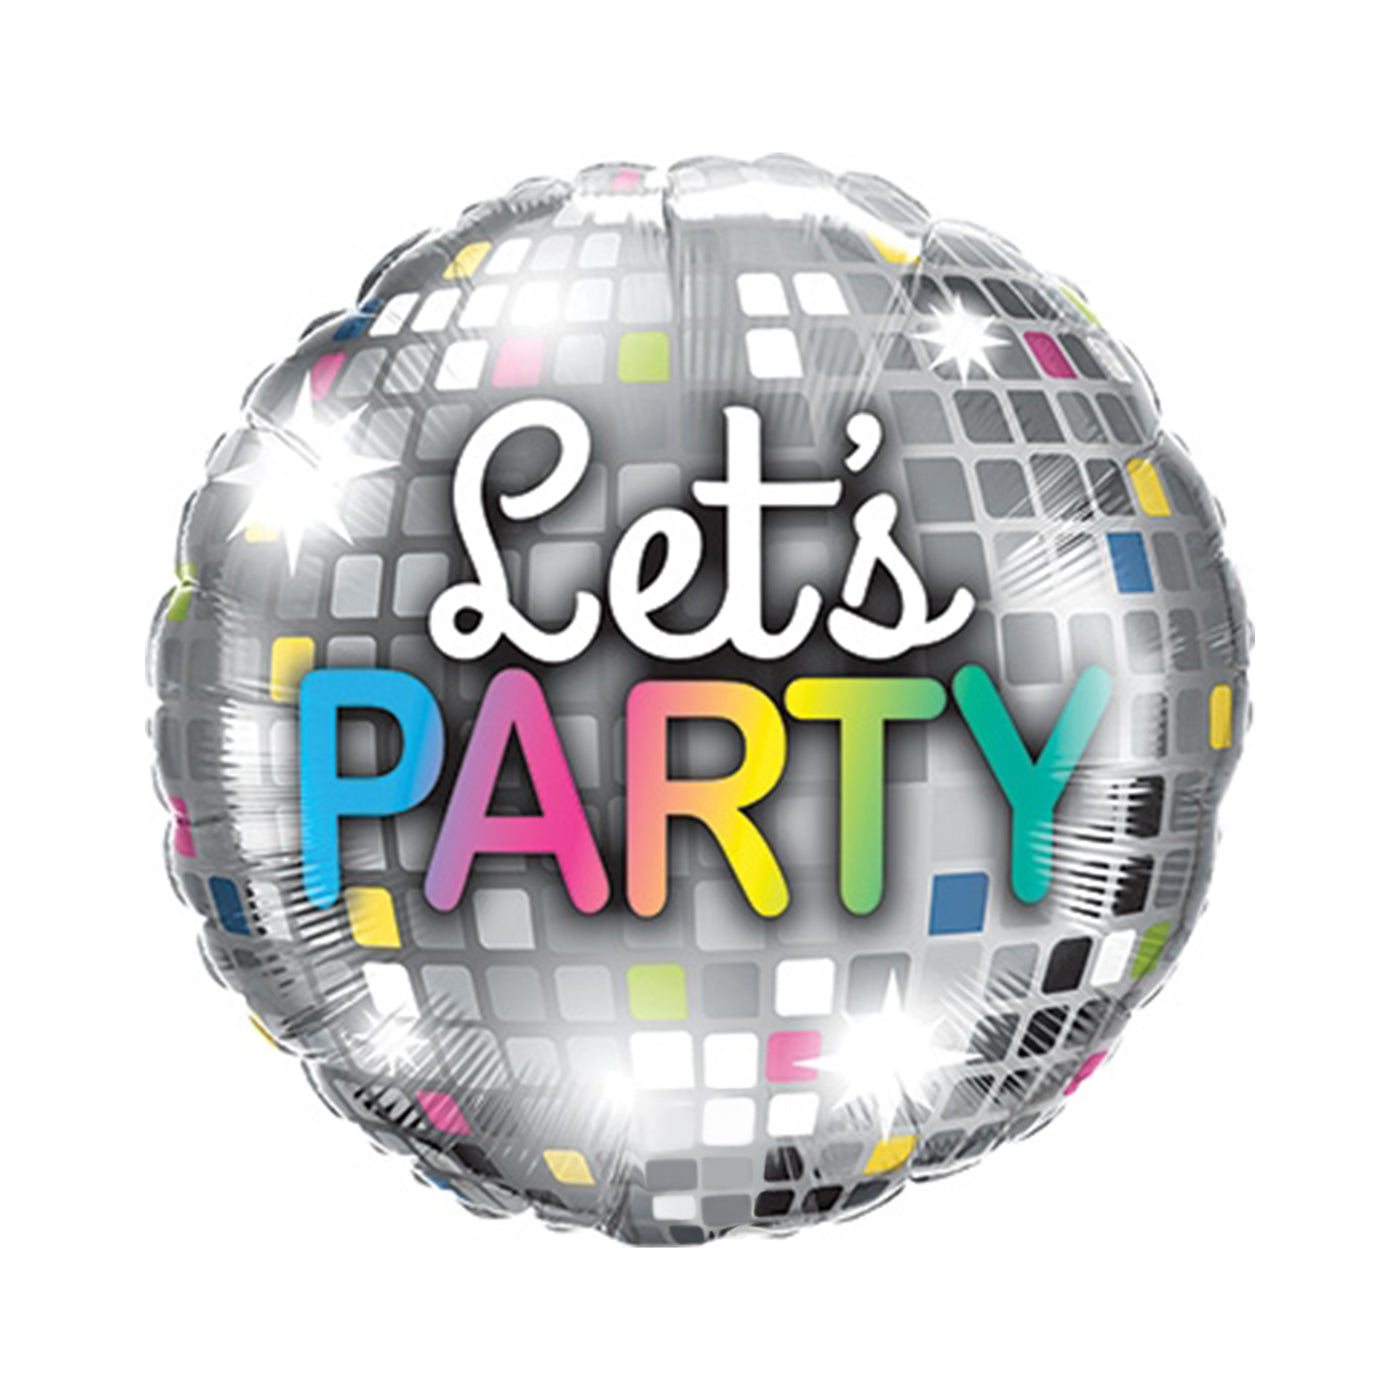 Let's Party Disco Ball Balloon